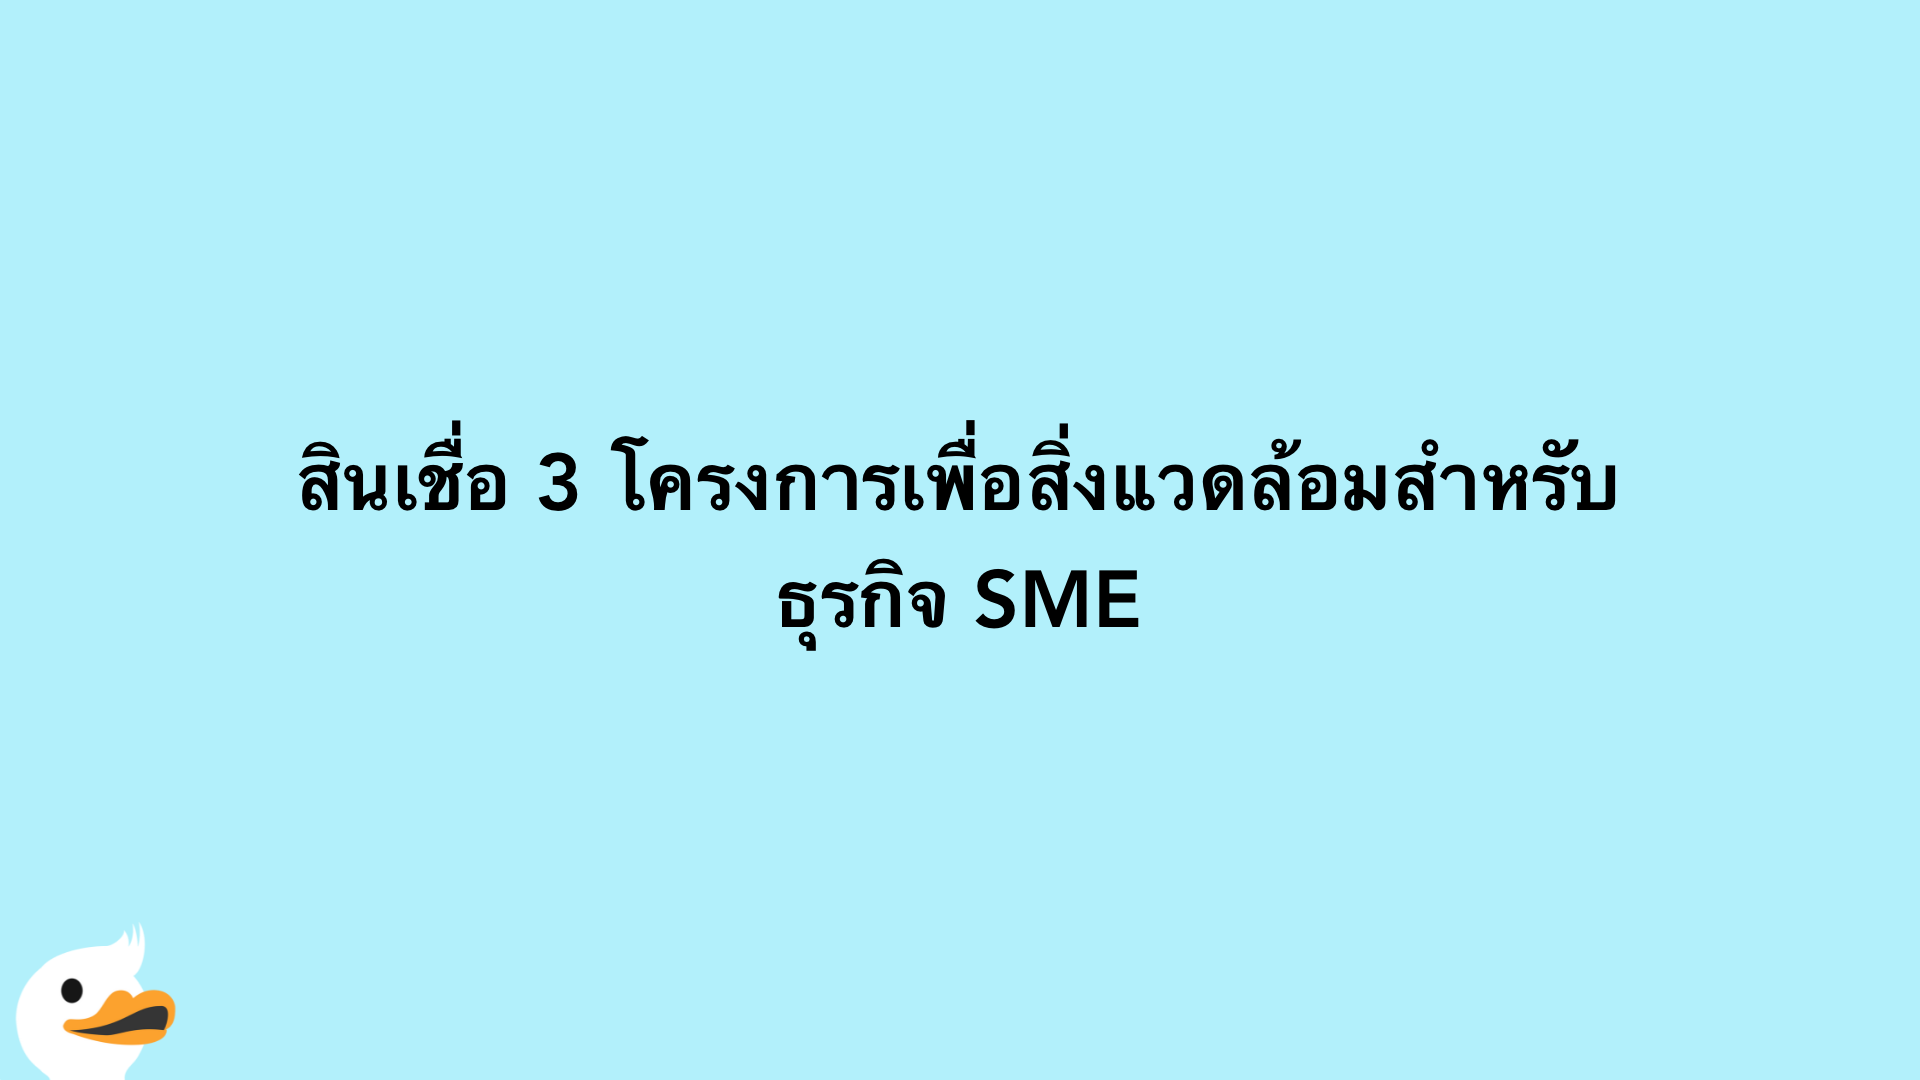 สินเชื่อ 3 โครงการเพื่อสิ่งแวดล้อมสำหรับธุรกิจ SME